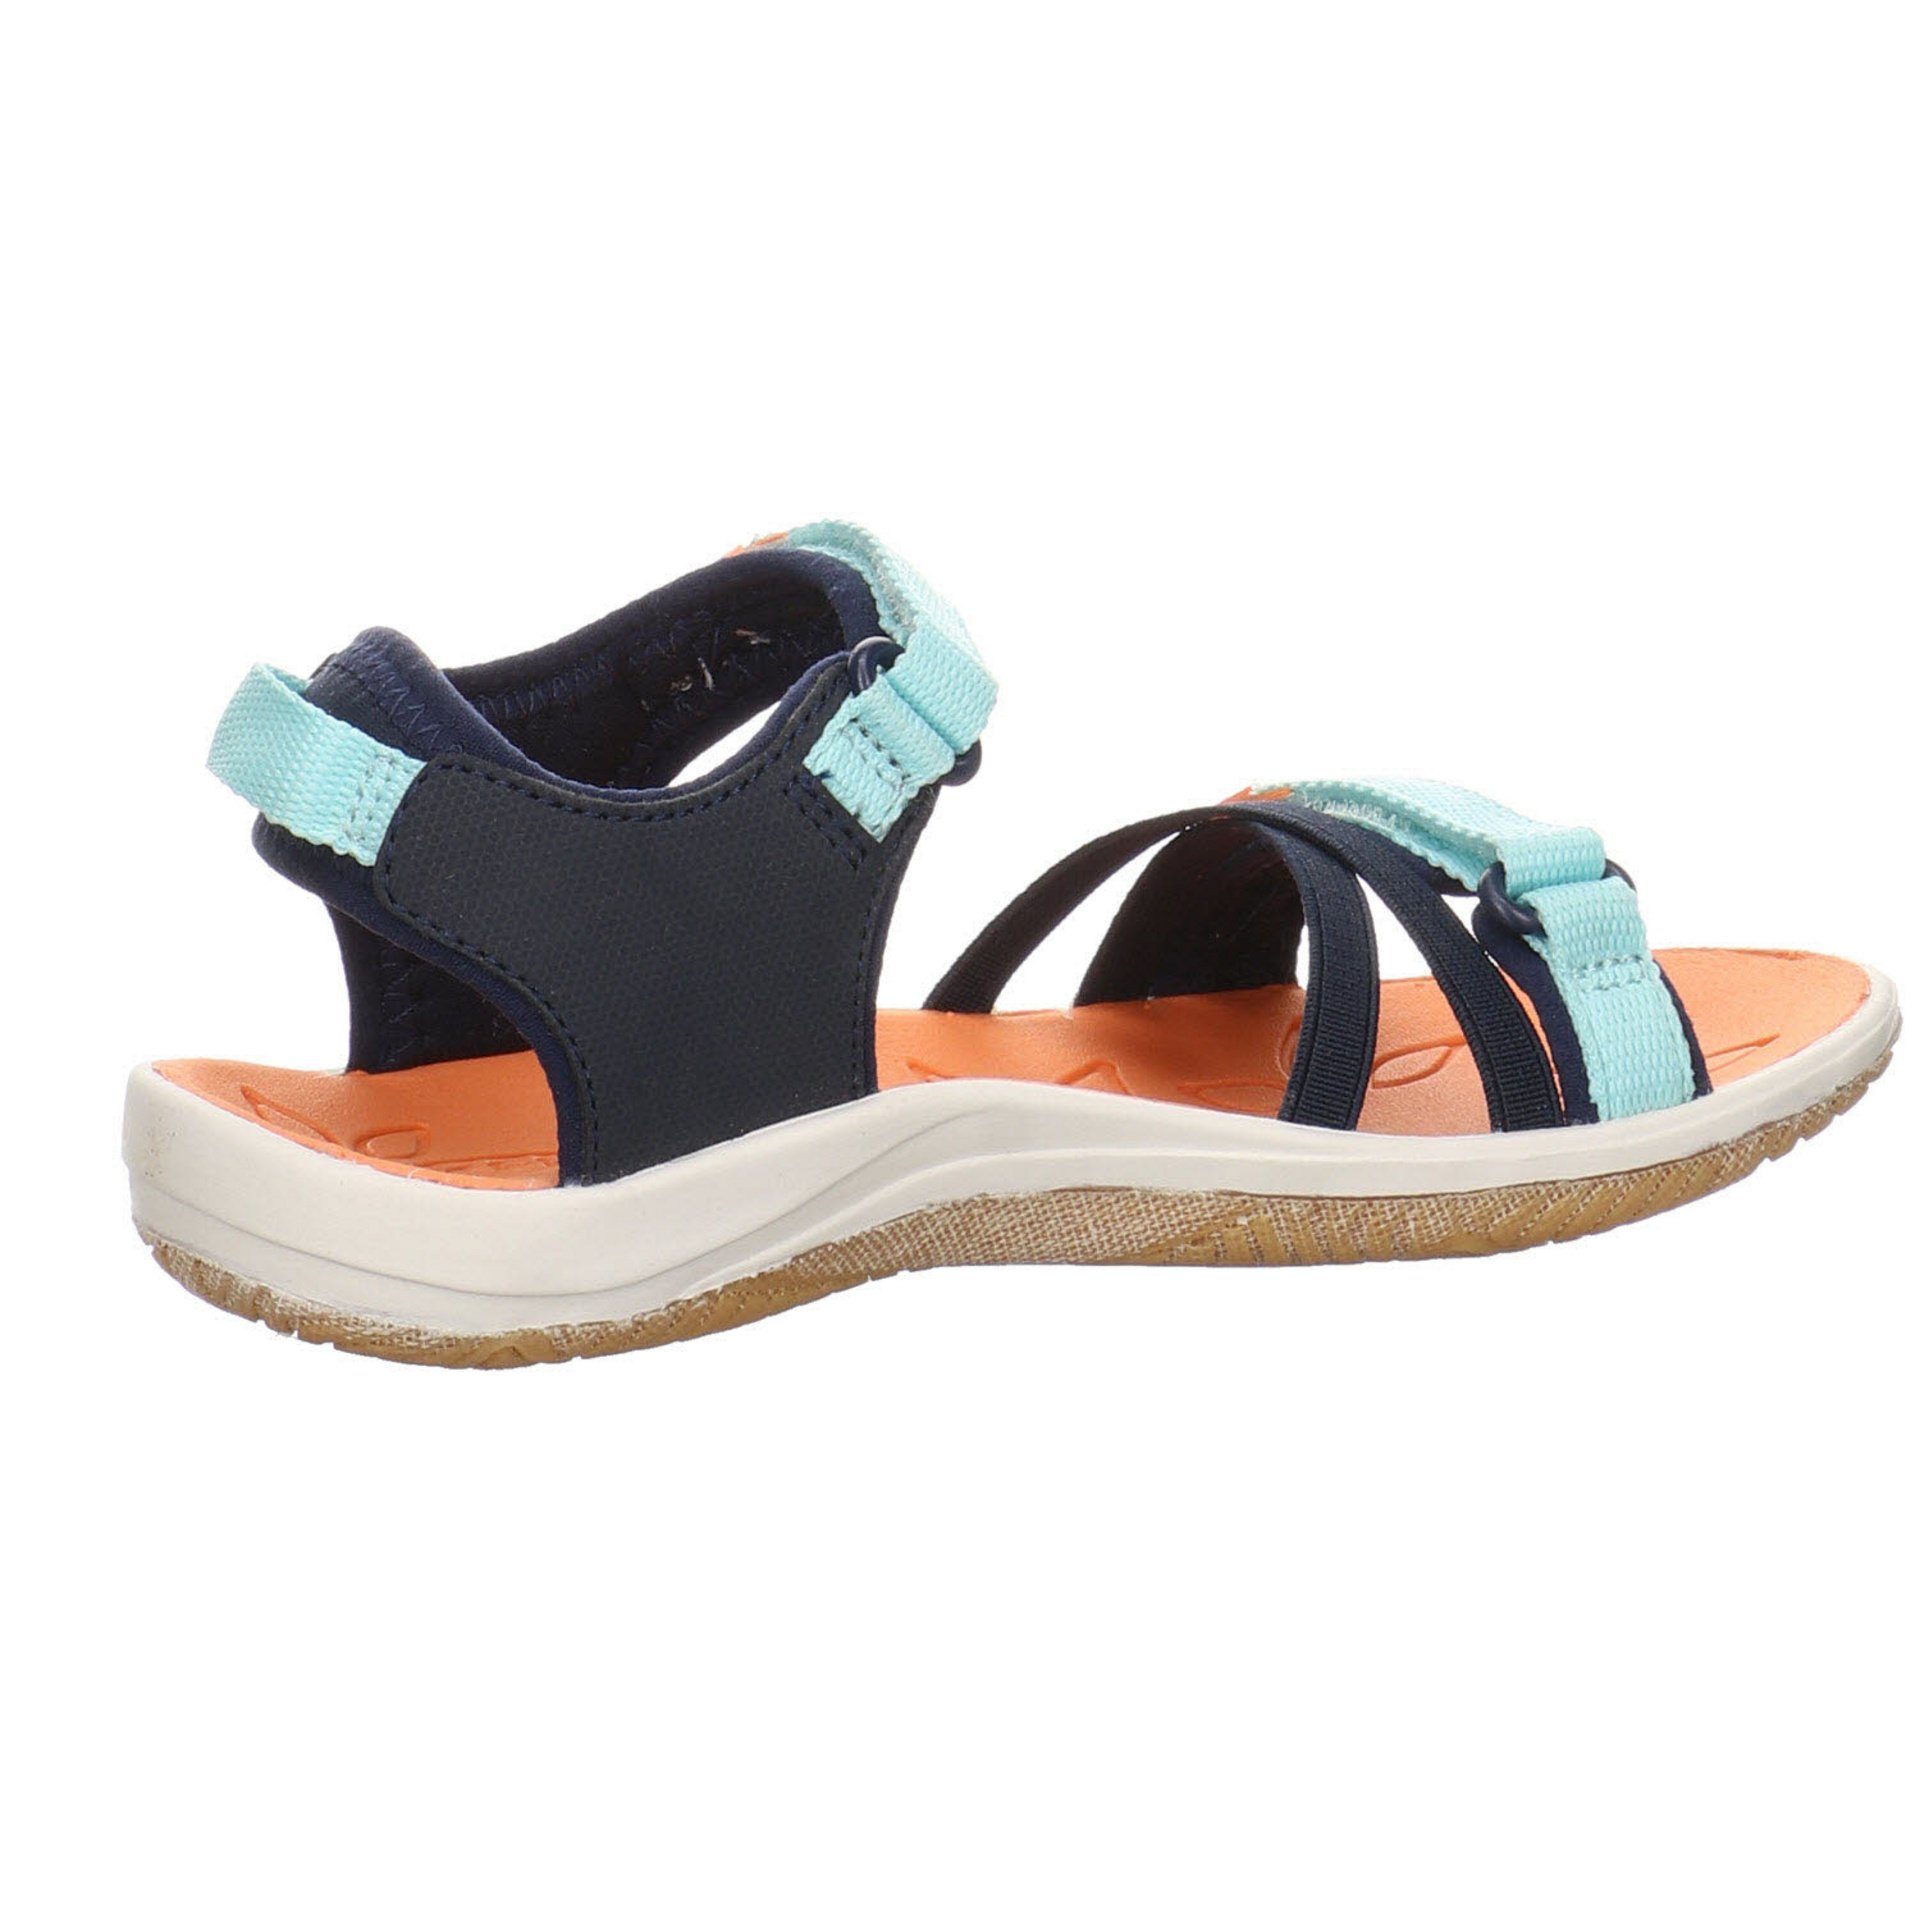 Keen Mädchen Sandalen blau Sandale Textil mittel Verano Sandale Schuhe